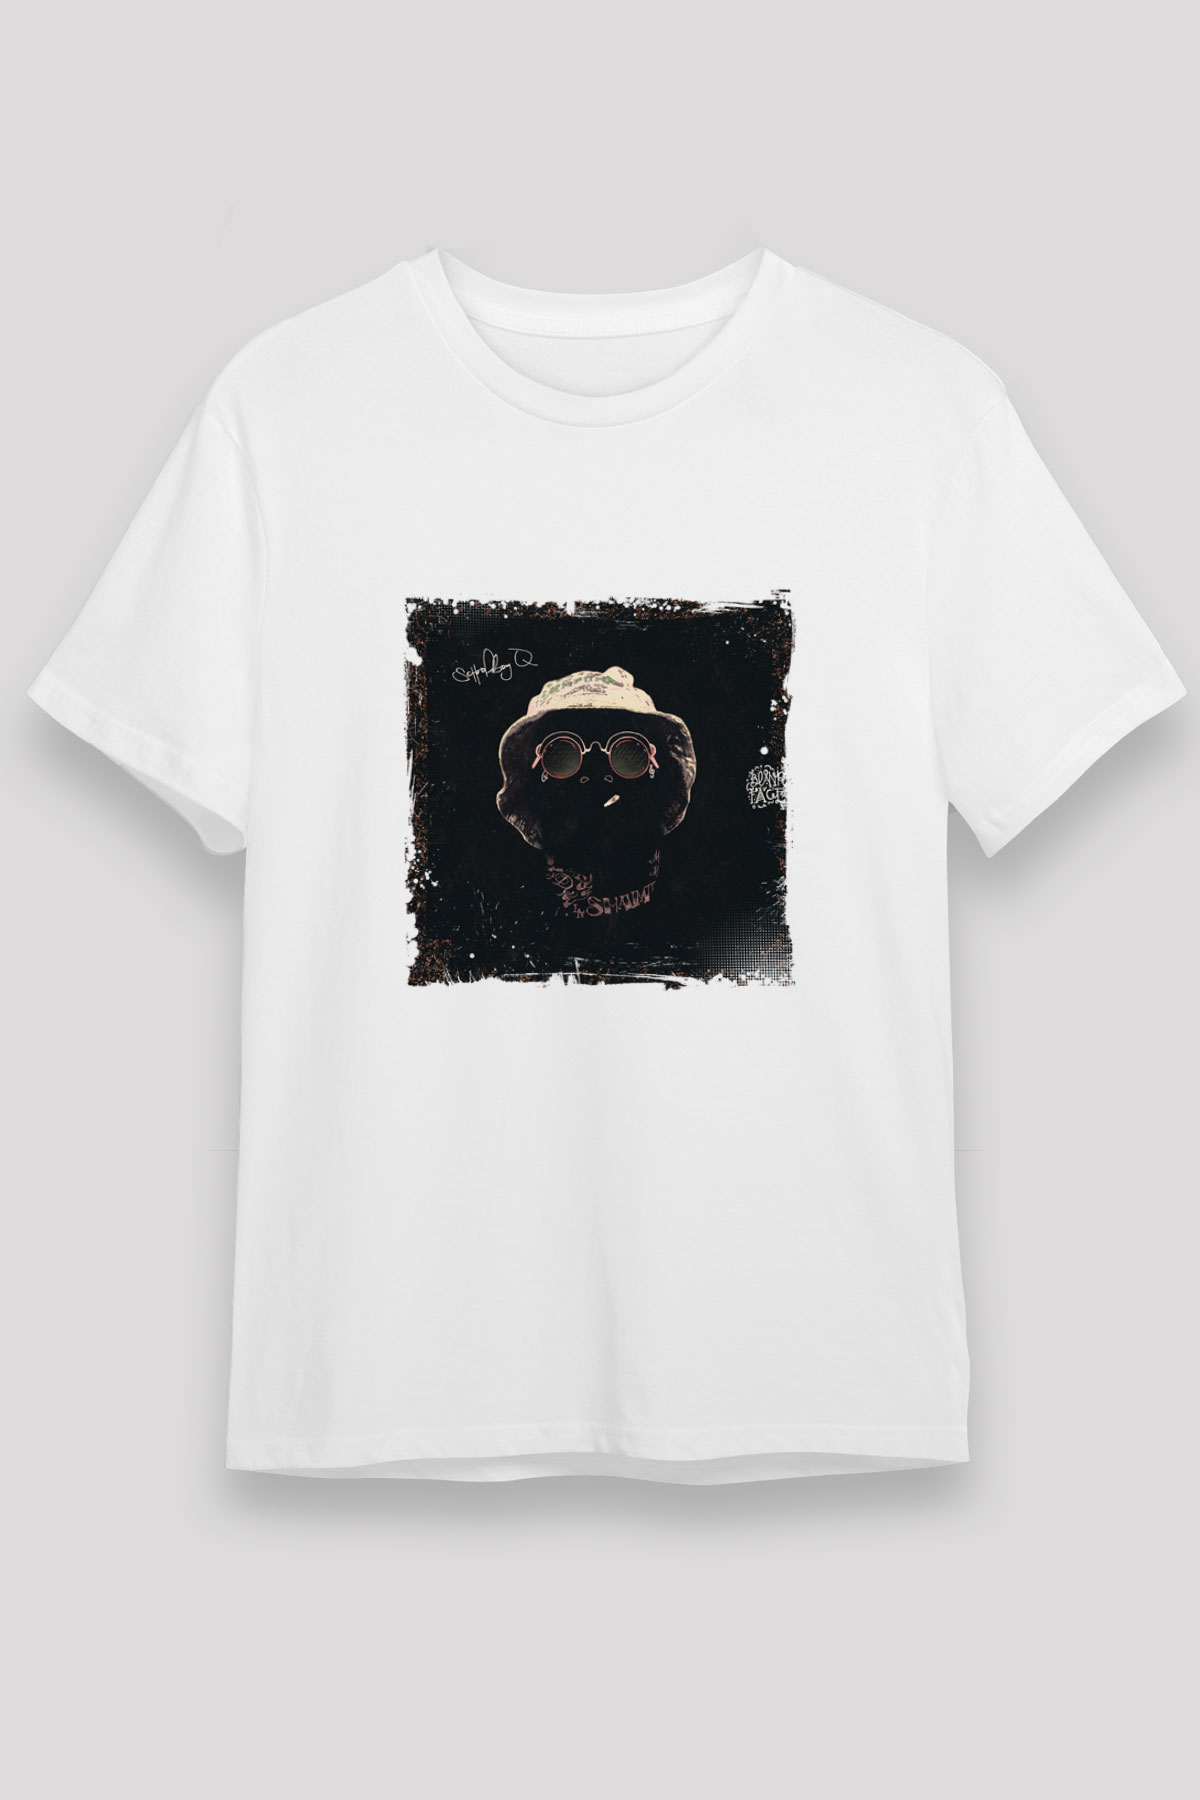 Schoolboy Q T shirt,Hip Hop,Rap Tshirt 05